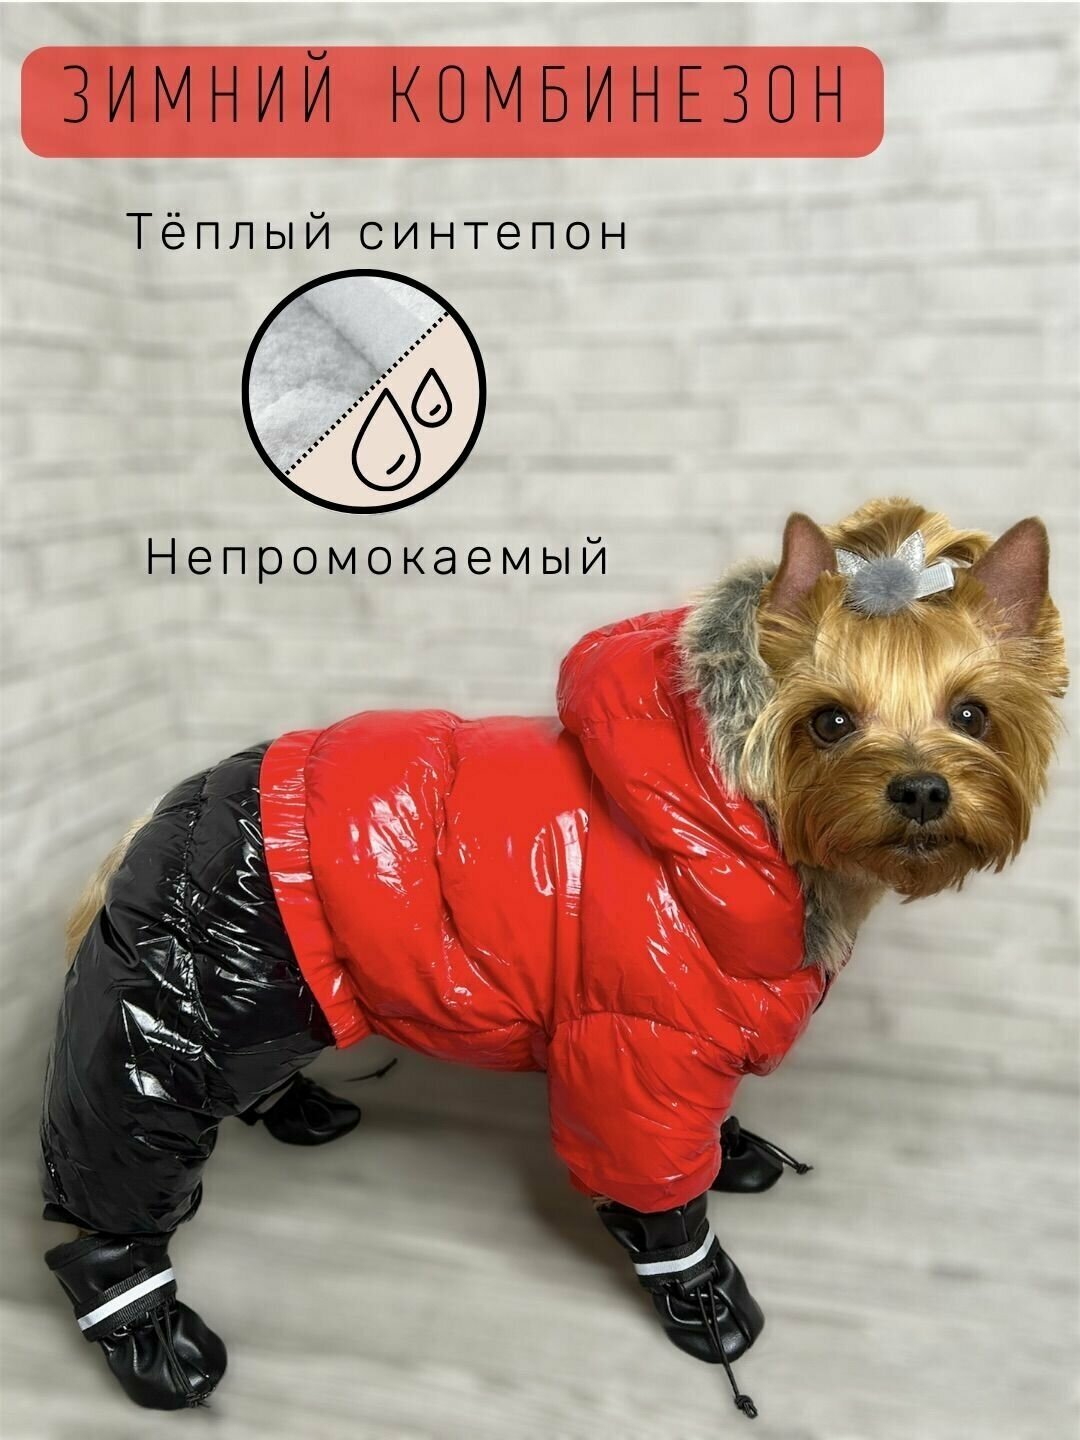 Зимний комбинезон для собак всех пород / Непромокаемый / Плотный синтепон / Размер 16 / Красный